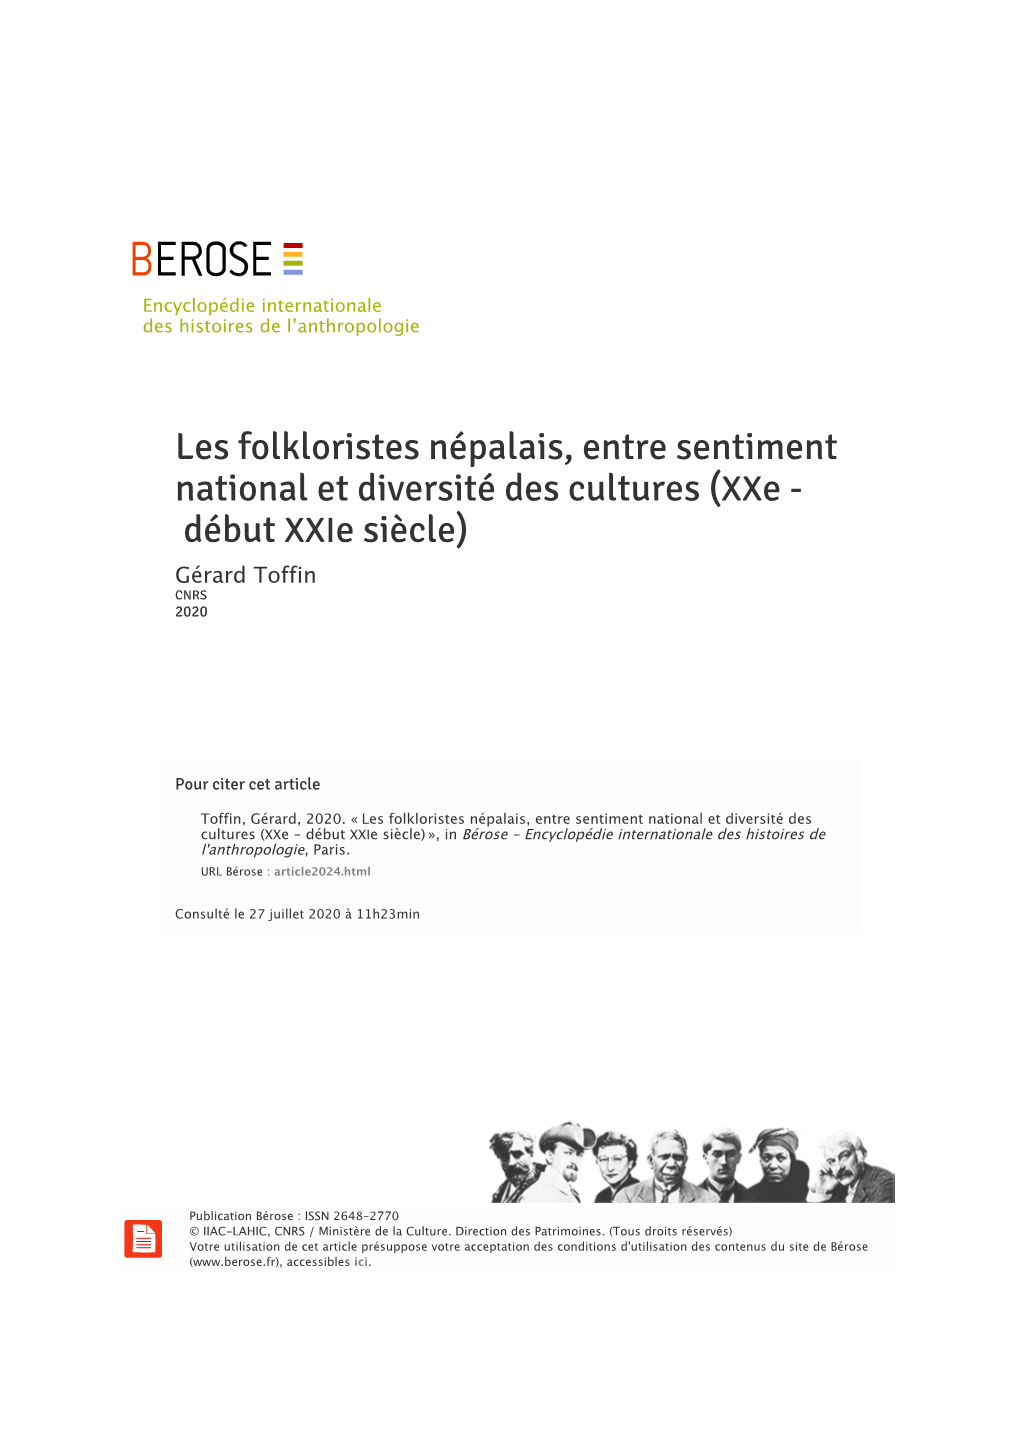 Les Folkloristes Népalais, Entre Sentiment National Et Diversité Des Cultures (Xxe - Début Xxie Siècle) Gérard Toffin CNRS 2020